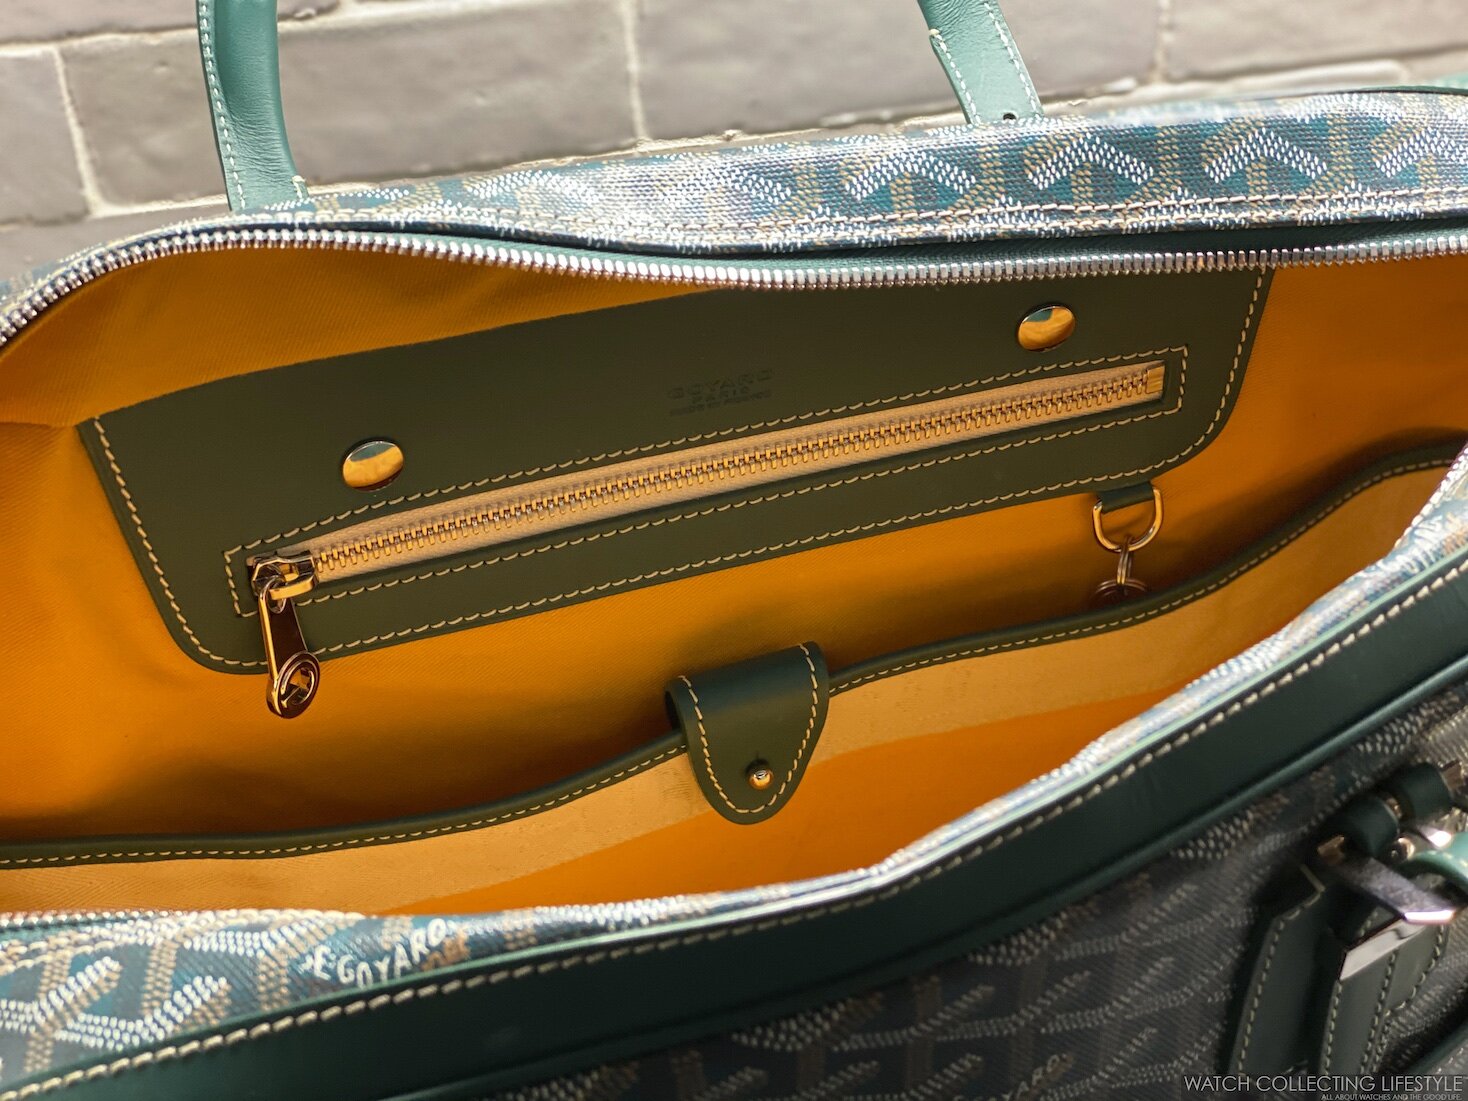 Goyard Suitcase from Scarlett (5040¥) : r/FashionReps